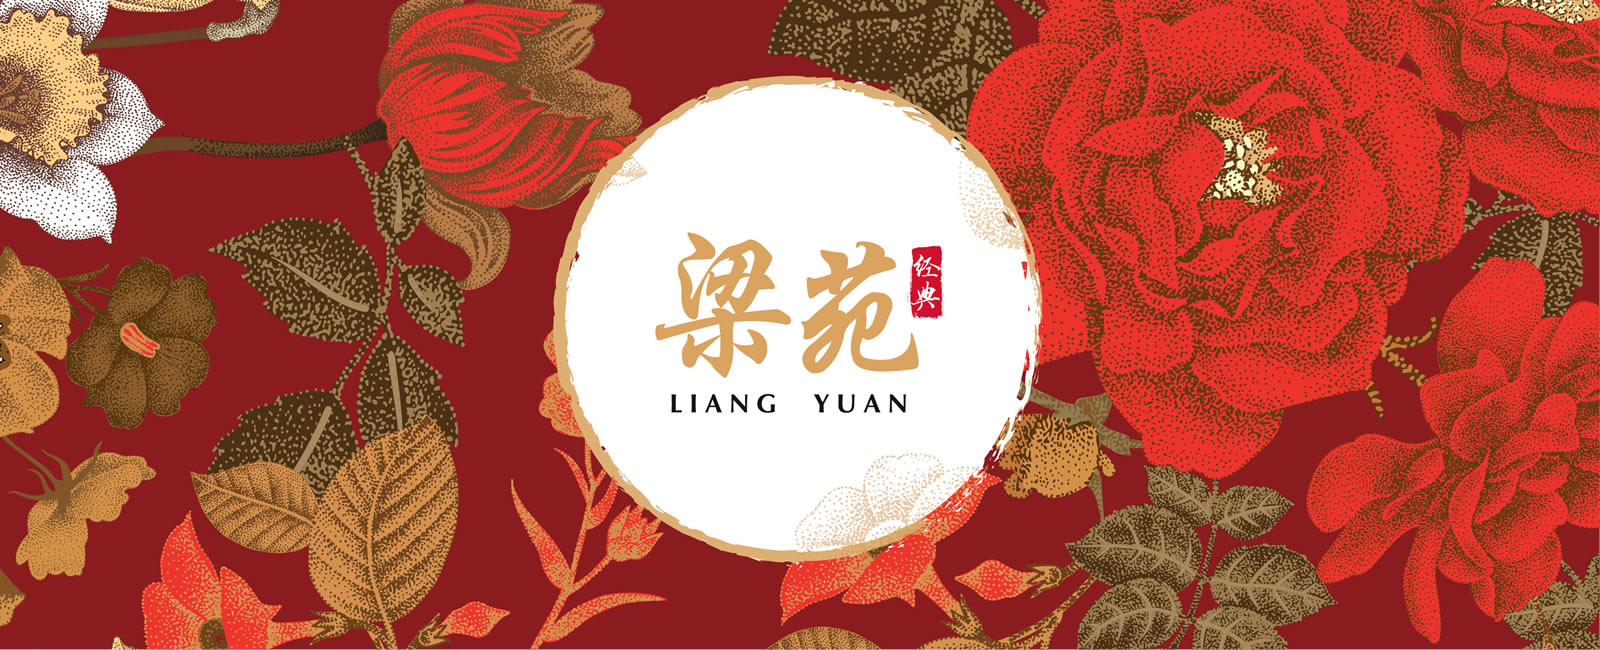 Liang Yuan